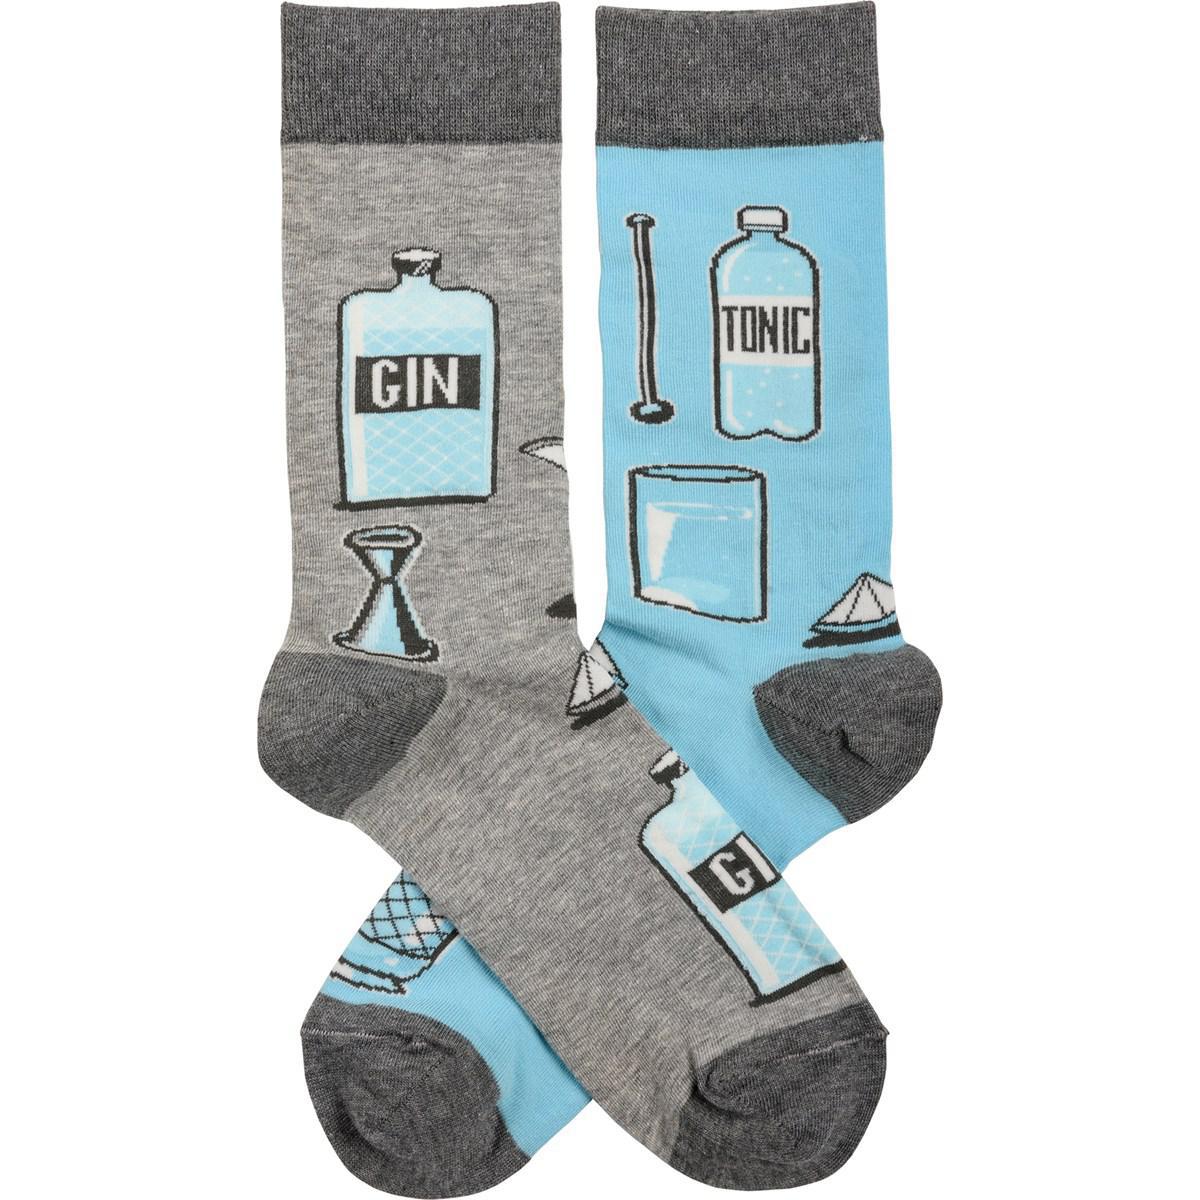 Gin & Tonic Socks